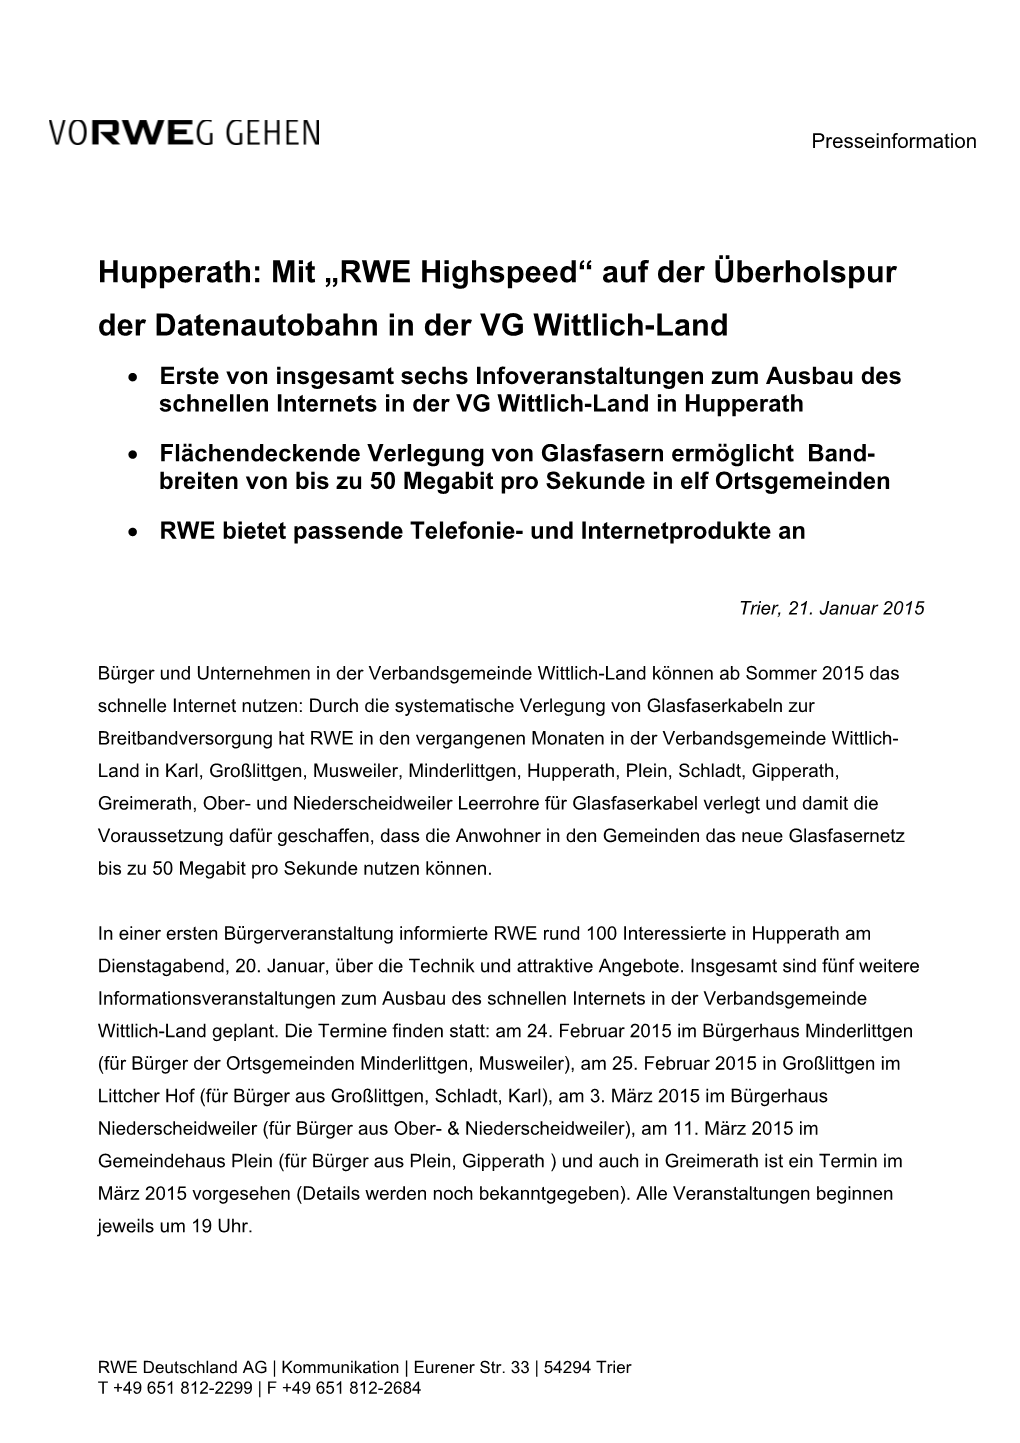 Hupperath: Mit „RWE Highspeed“